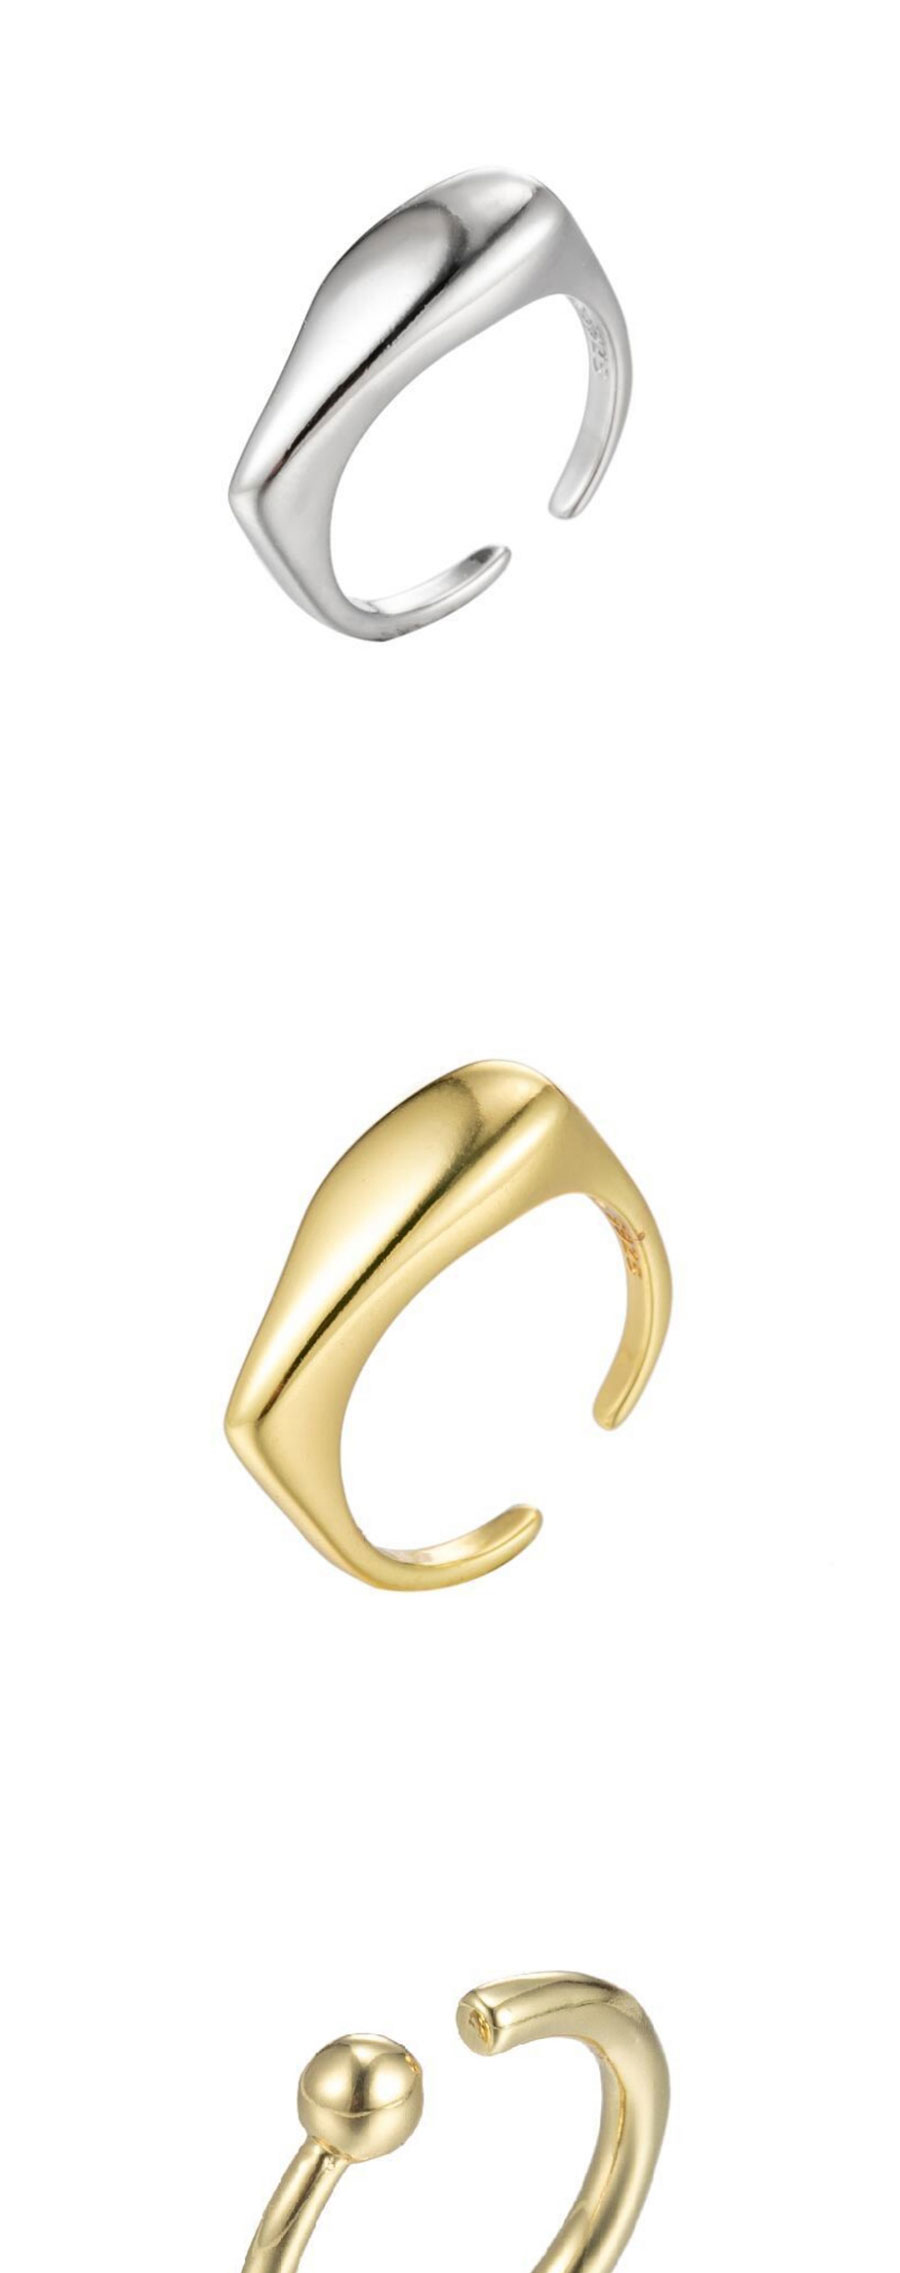 Fashion Silver-2 Stainless Steel Irregular Drop Opening Ring,Rings